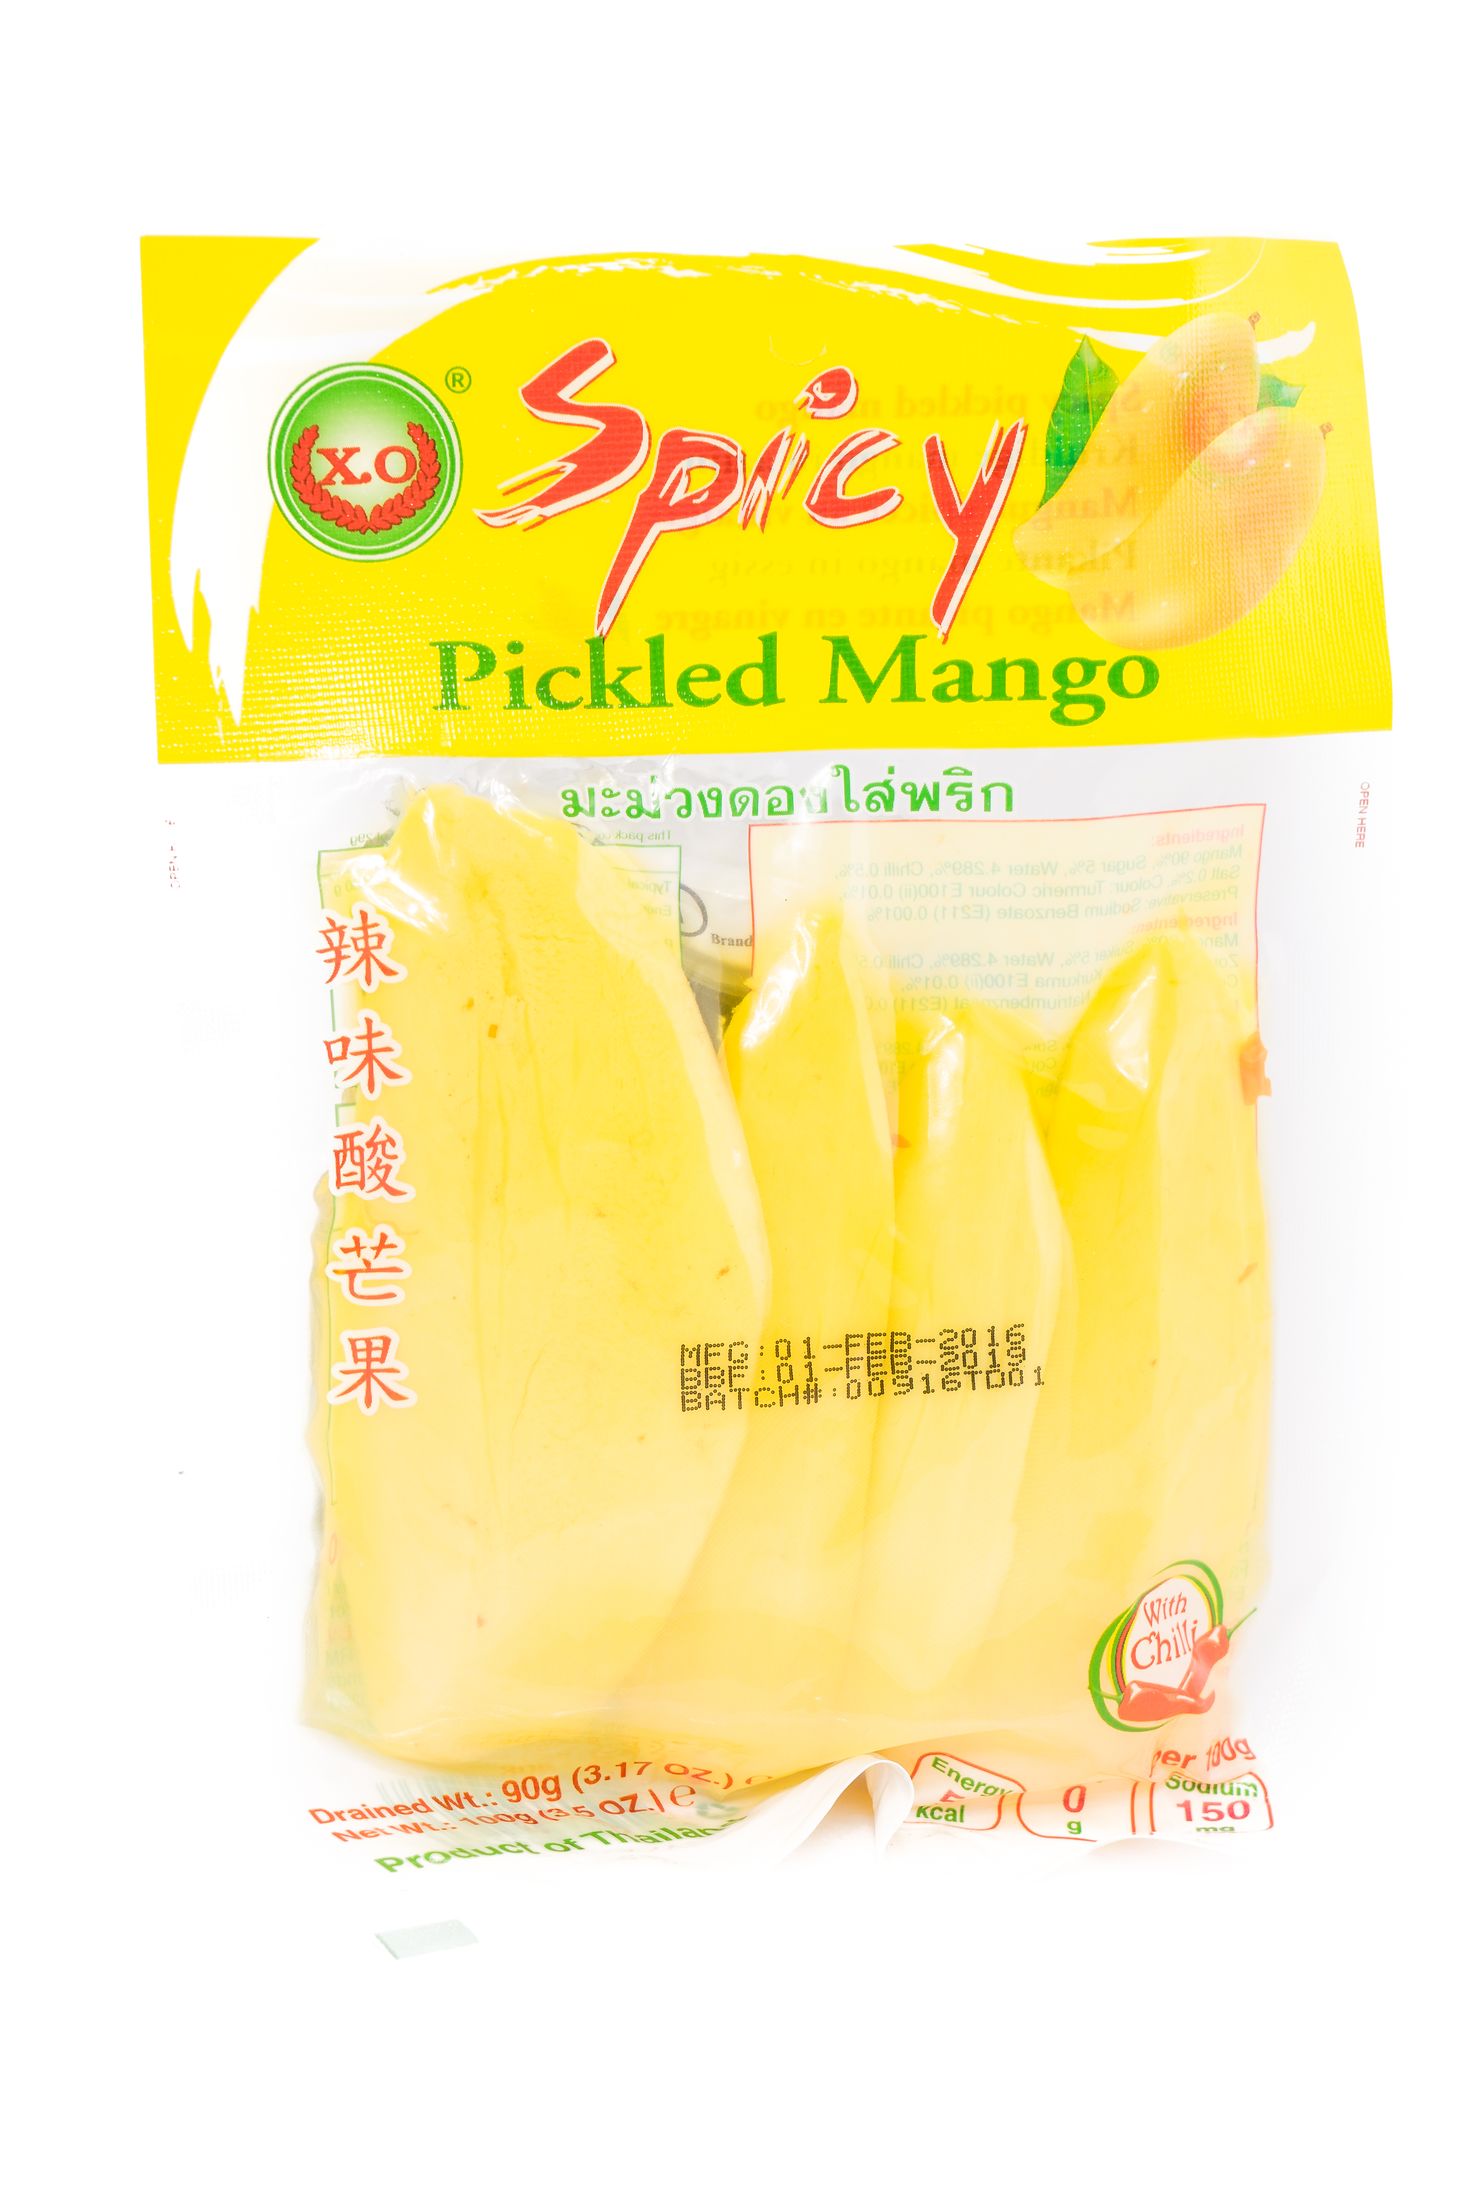 X.O Spicy pickled mango